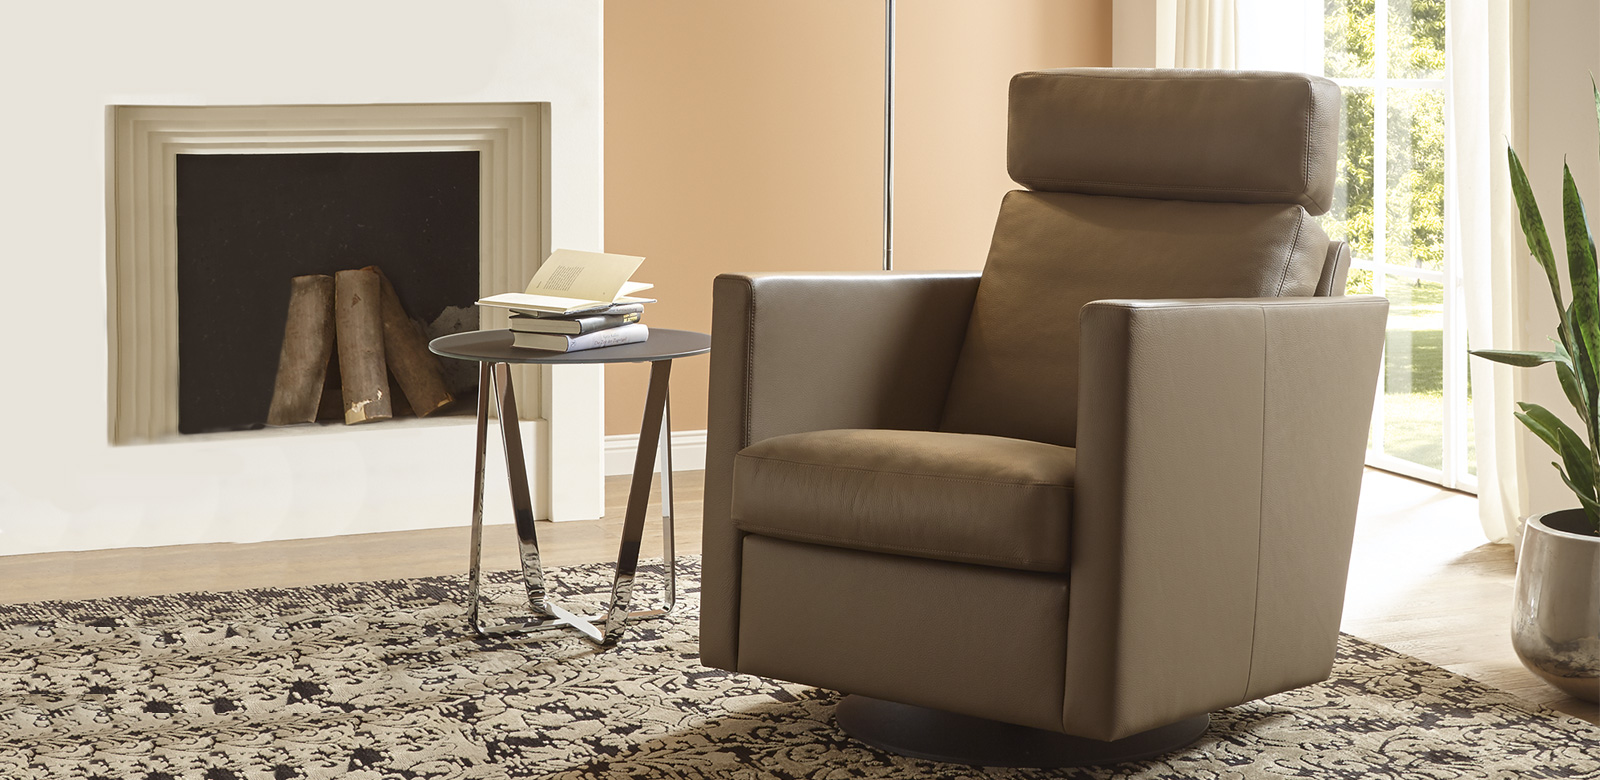 Deze slanke fauteuil past harmonieus in elke configuratie van onze collecties. Een draaiplateau en een schommelfunctie voor maximaal zitcomfort laten niets te wensen over.